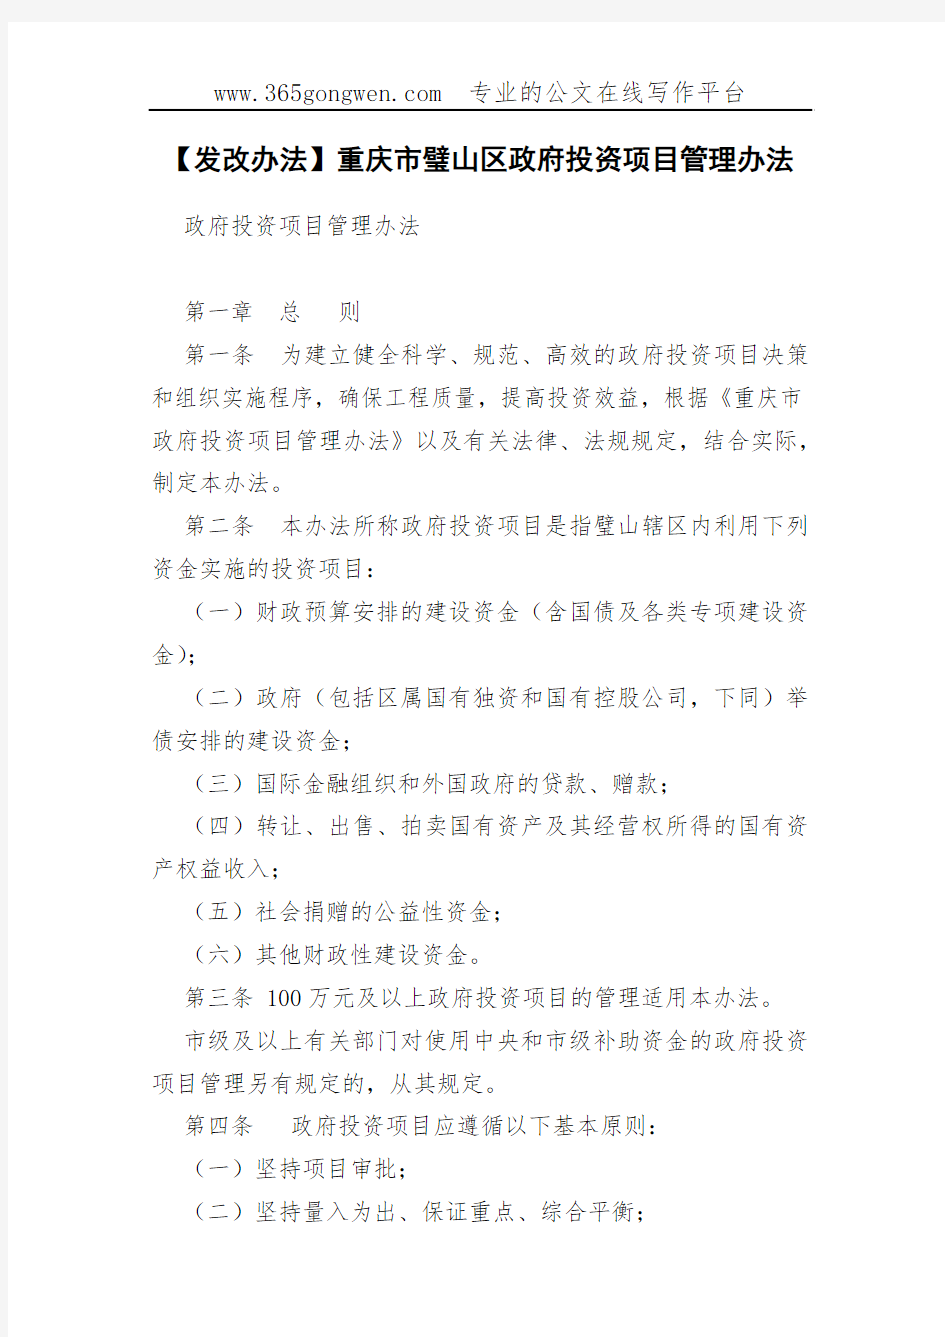 【发改办法】重庆市璧山区政府投资项目管理办法